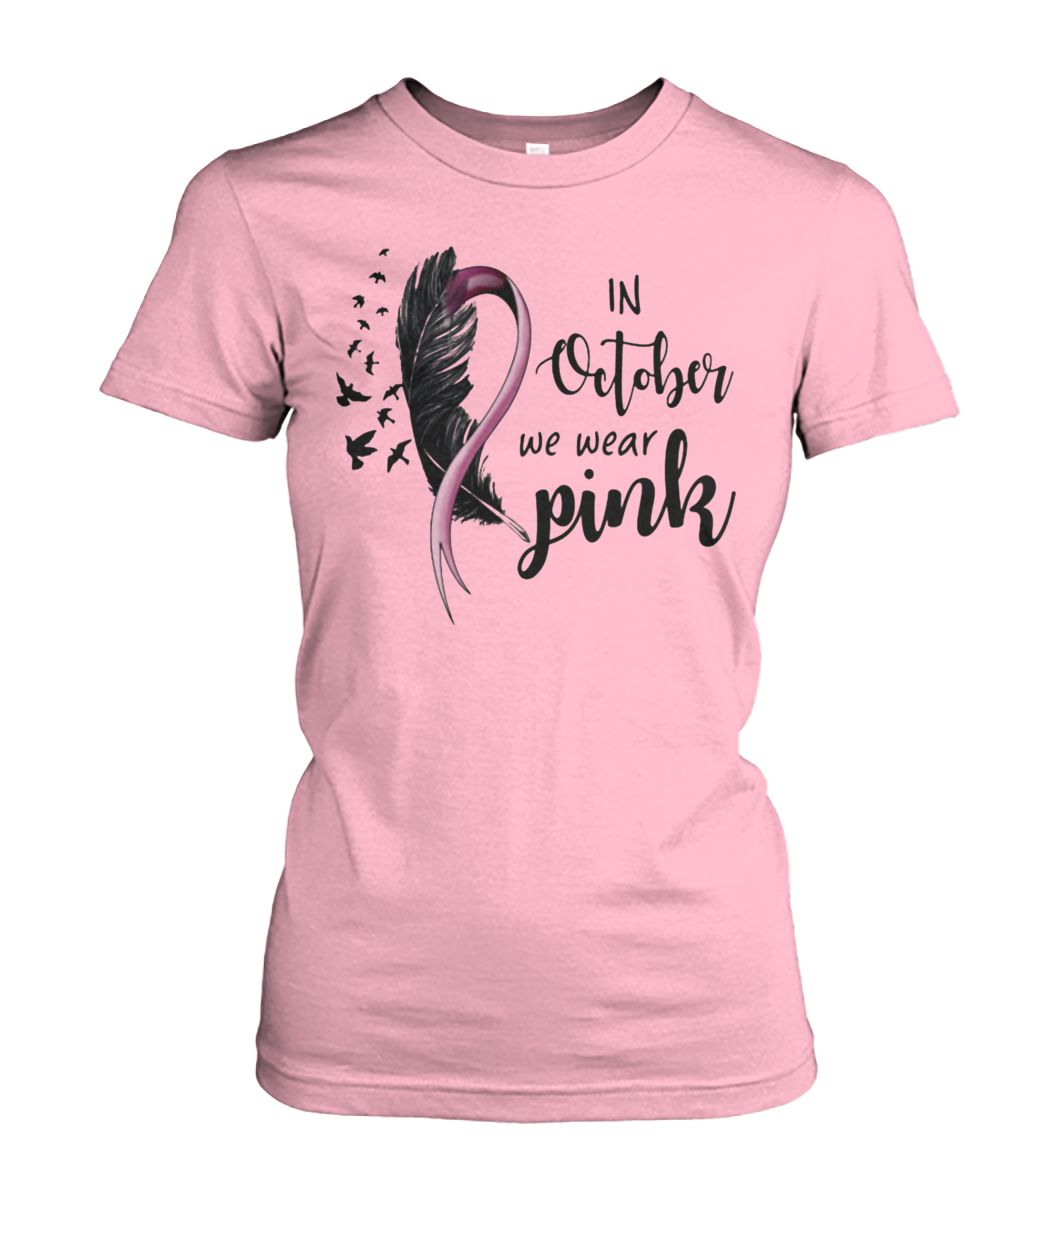 Breast cancer in october we wear pink women's crew tee